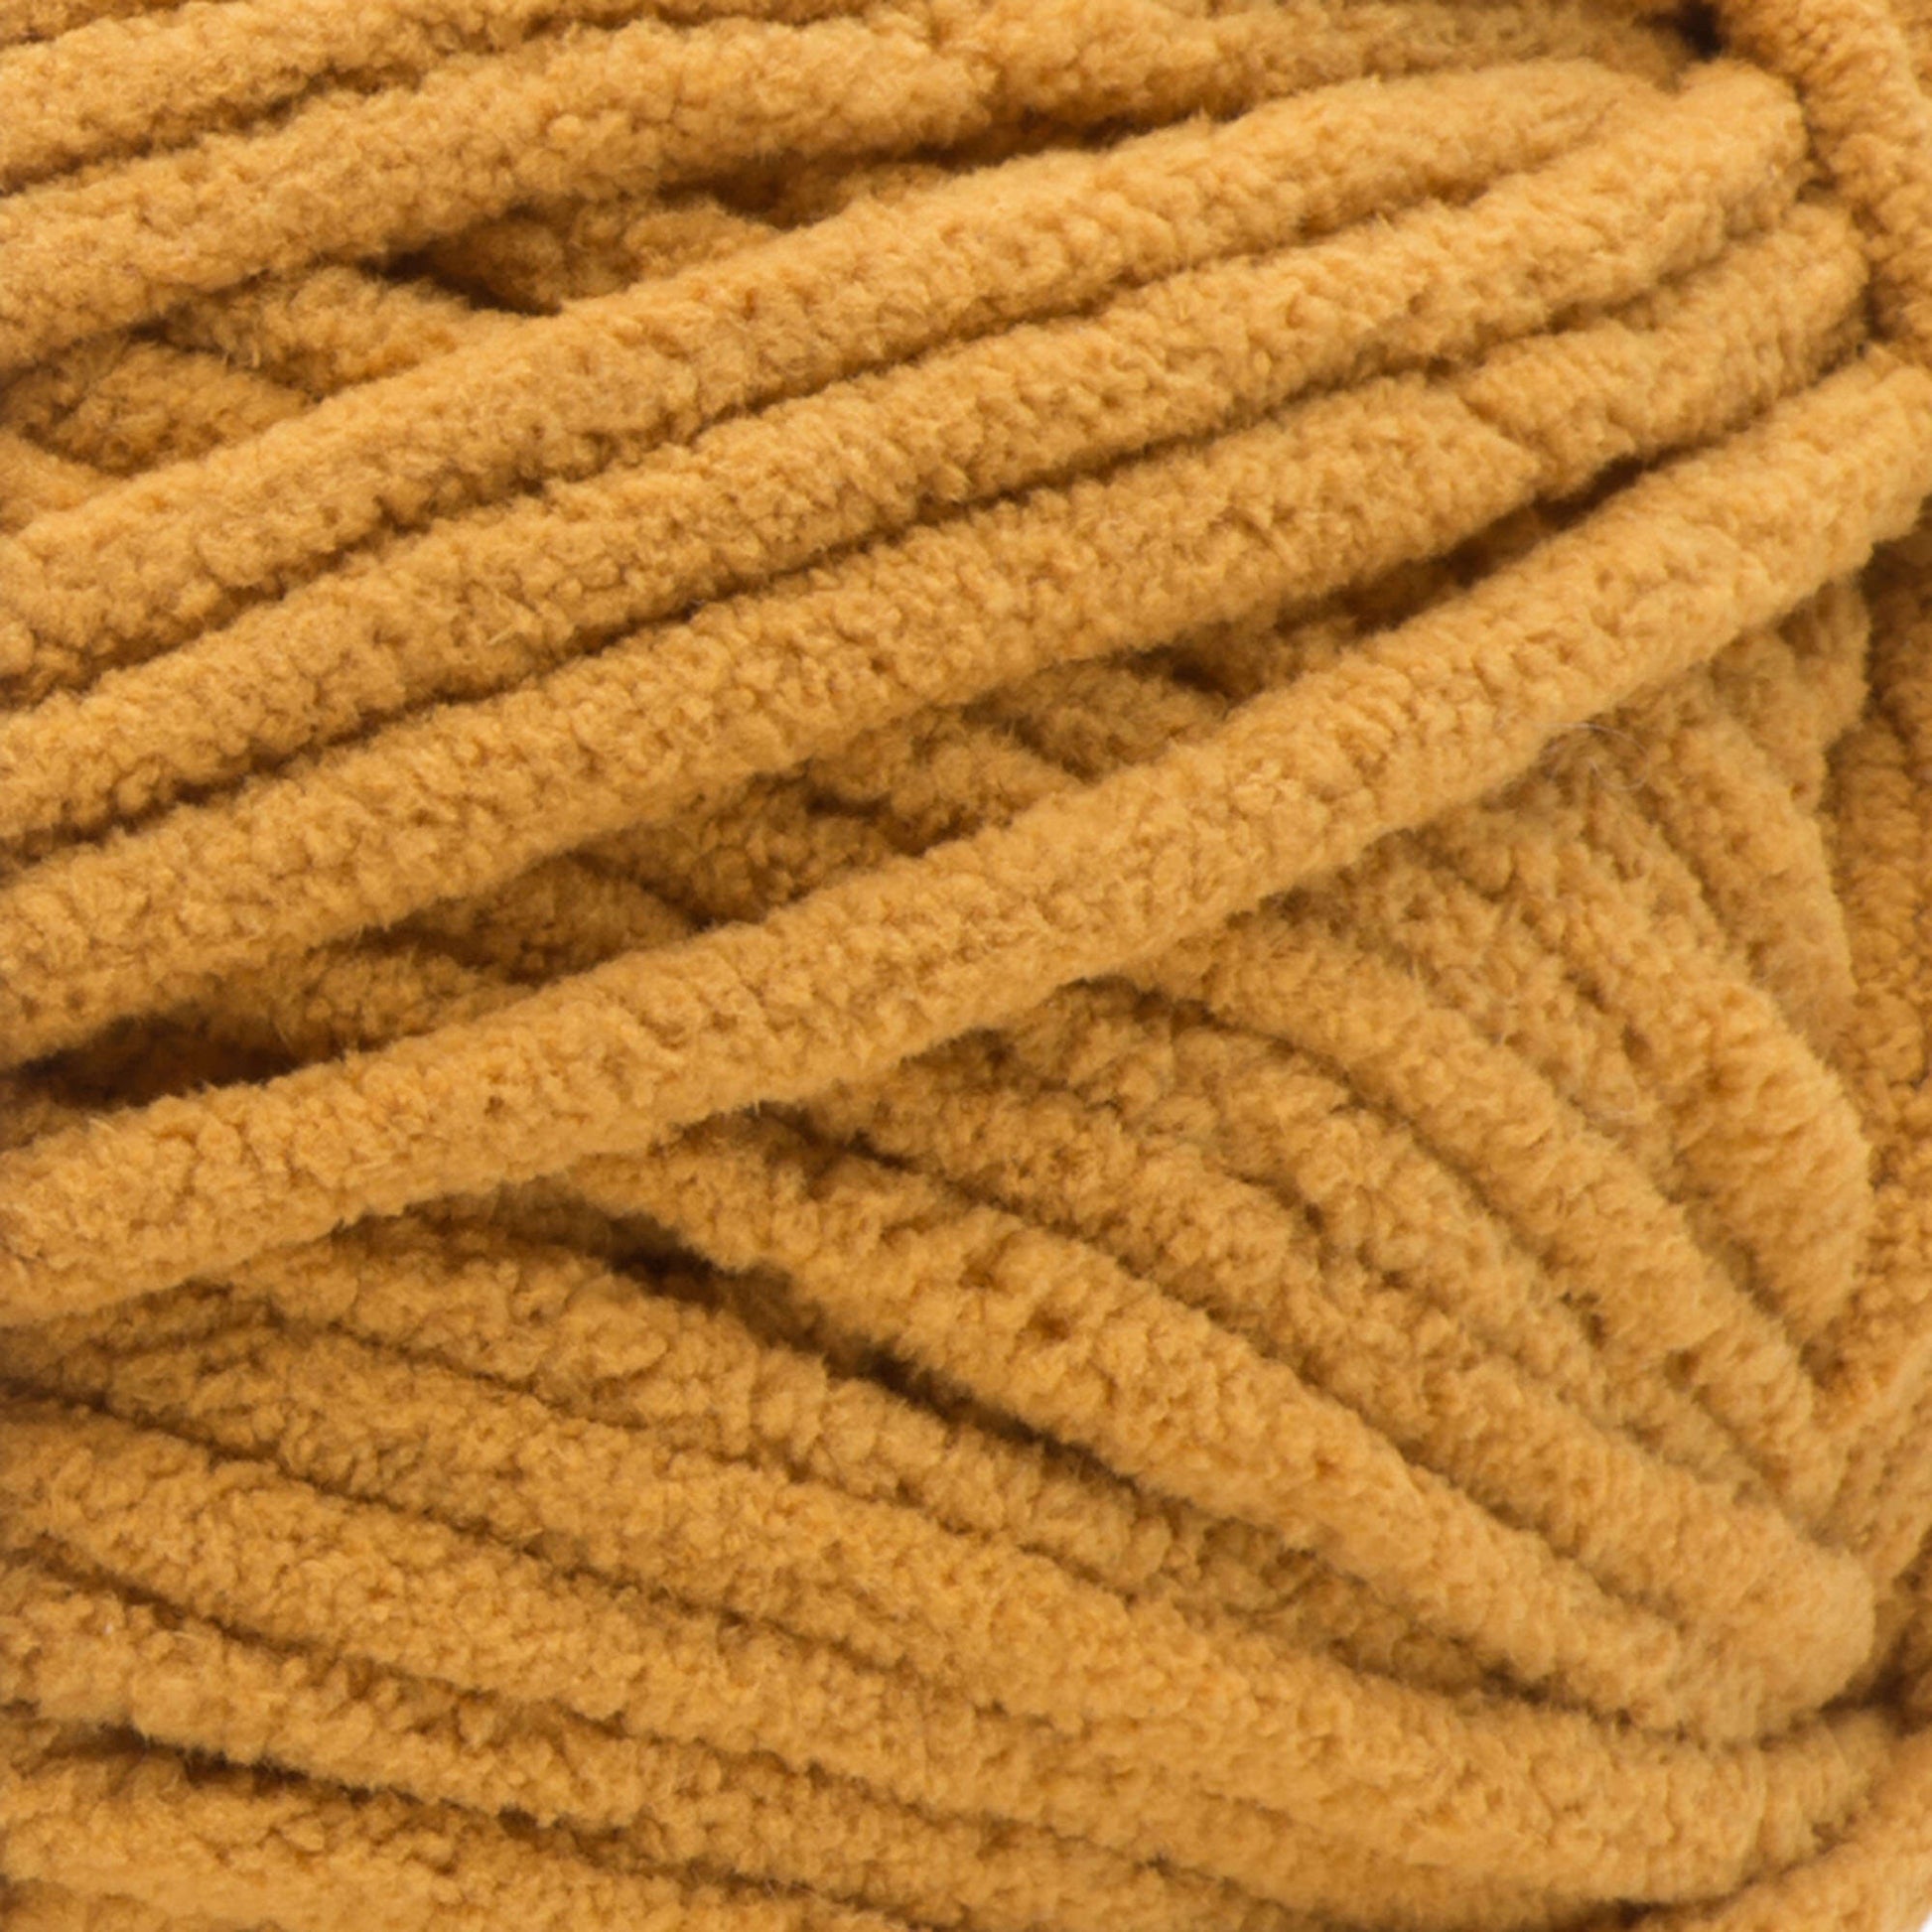 Bernat Blanket Yarn (300g/10.5oz) Burnt Mustard